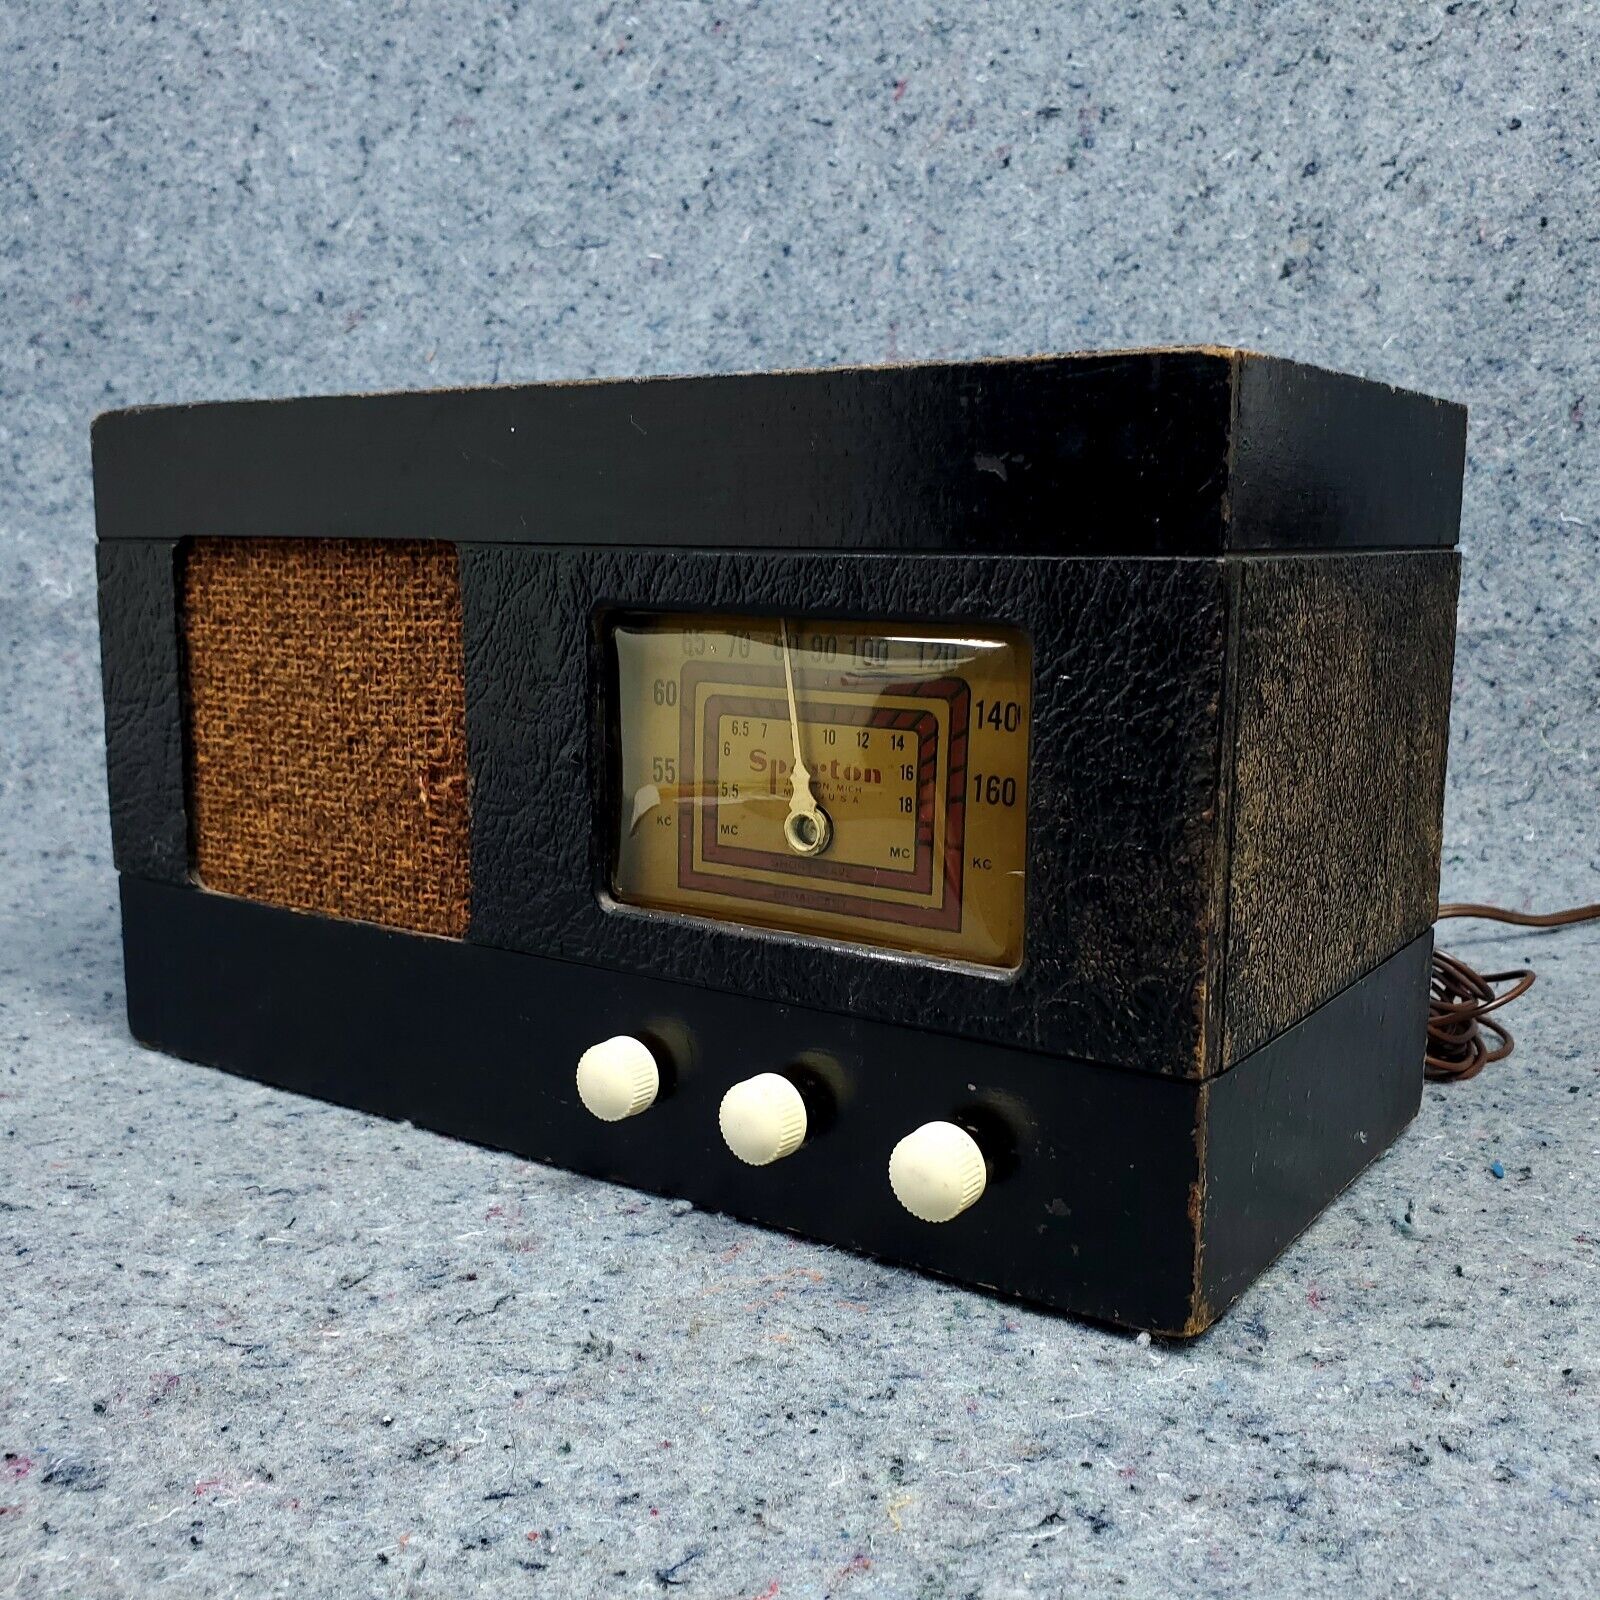 Vintage Sparton Tube Radio AM Tabletop Black Leatherette Works But Has HUM